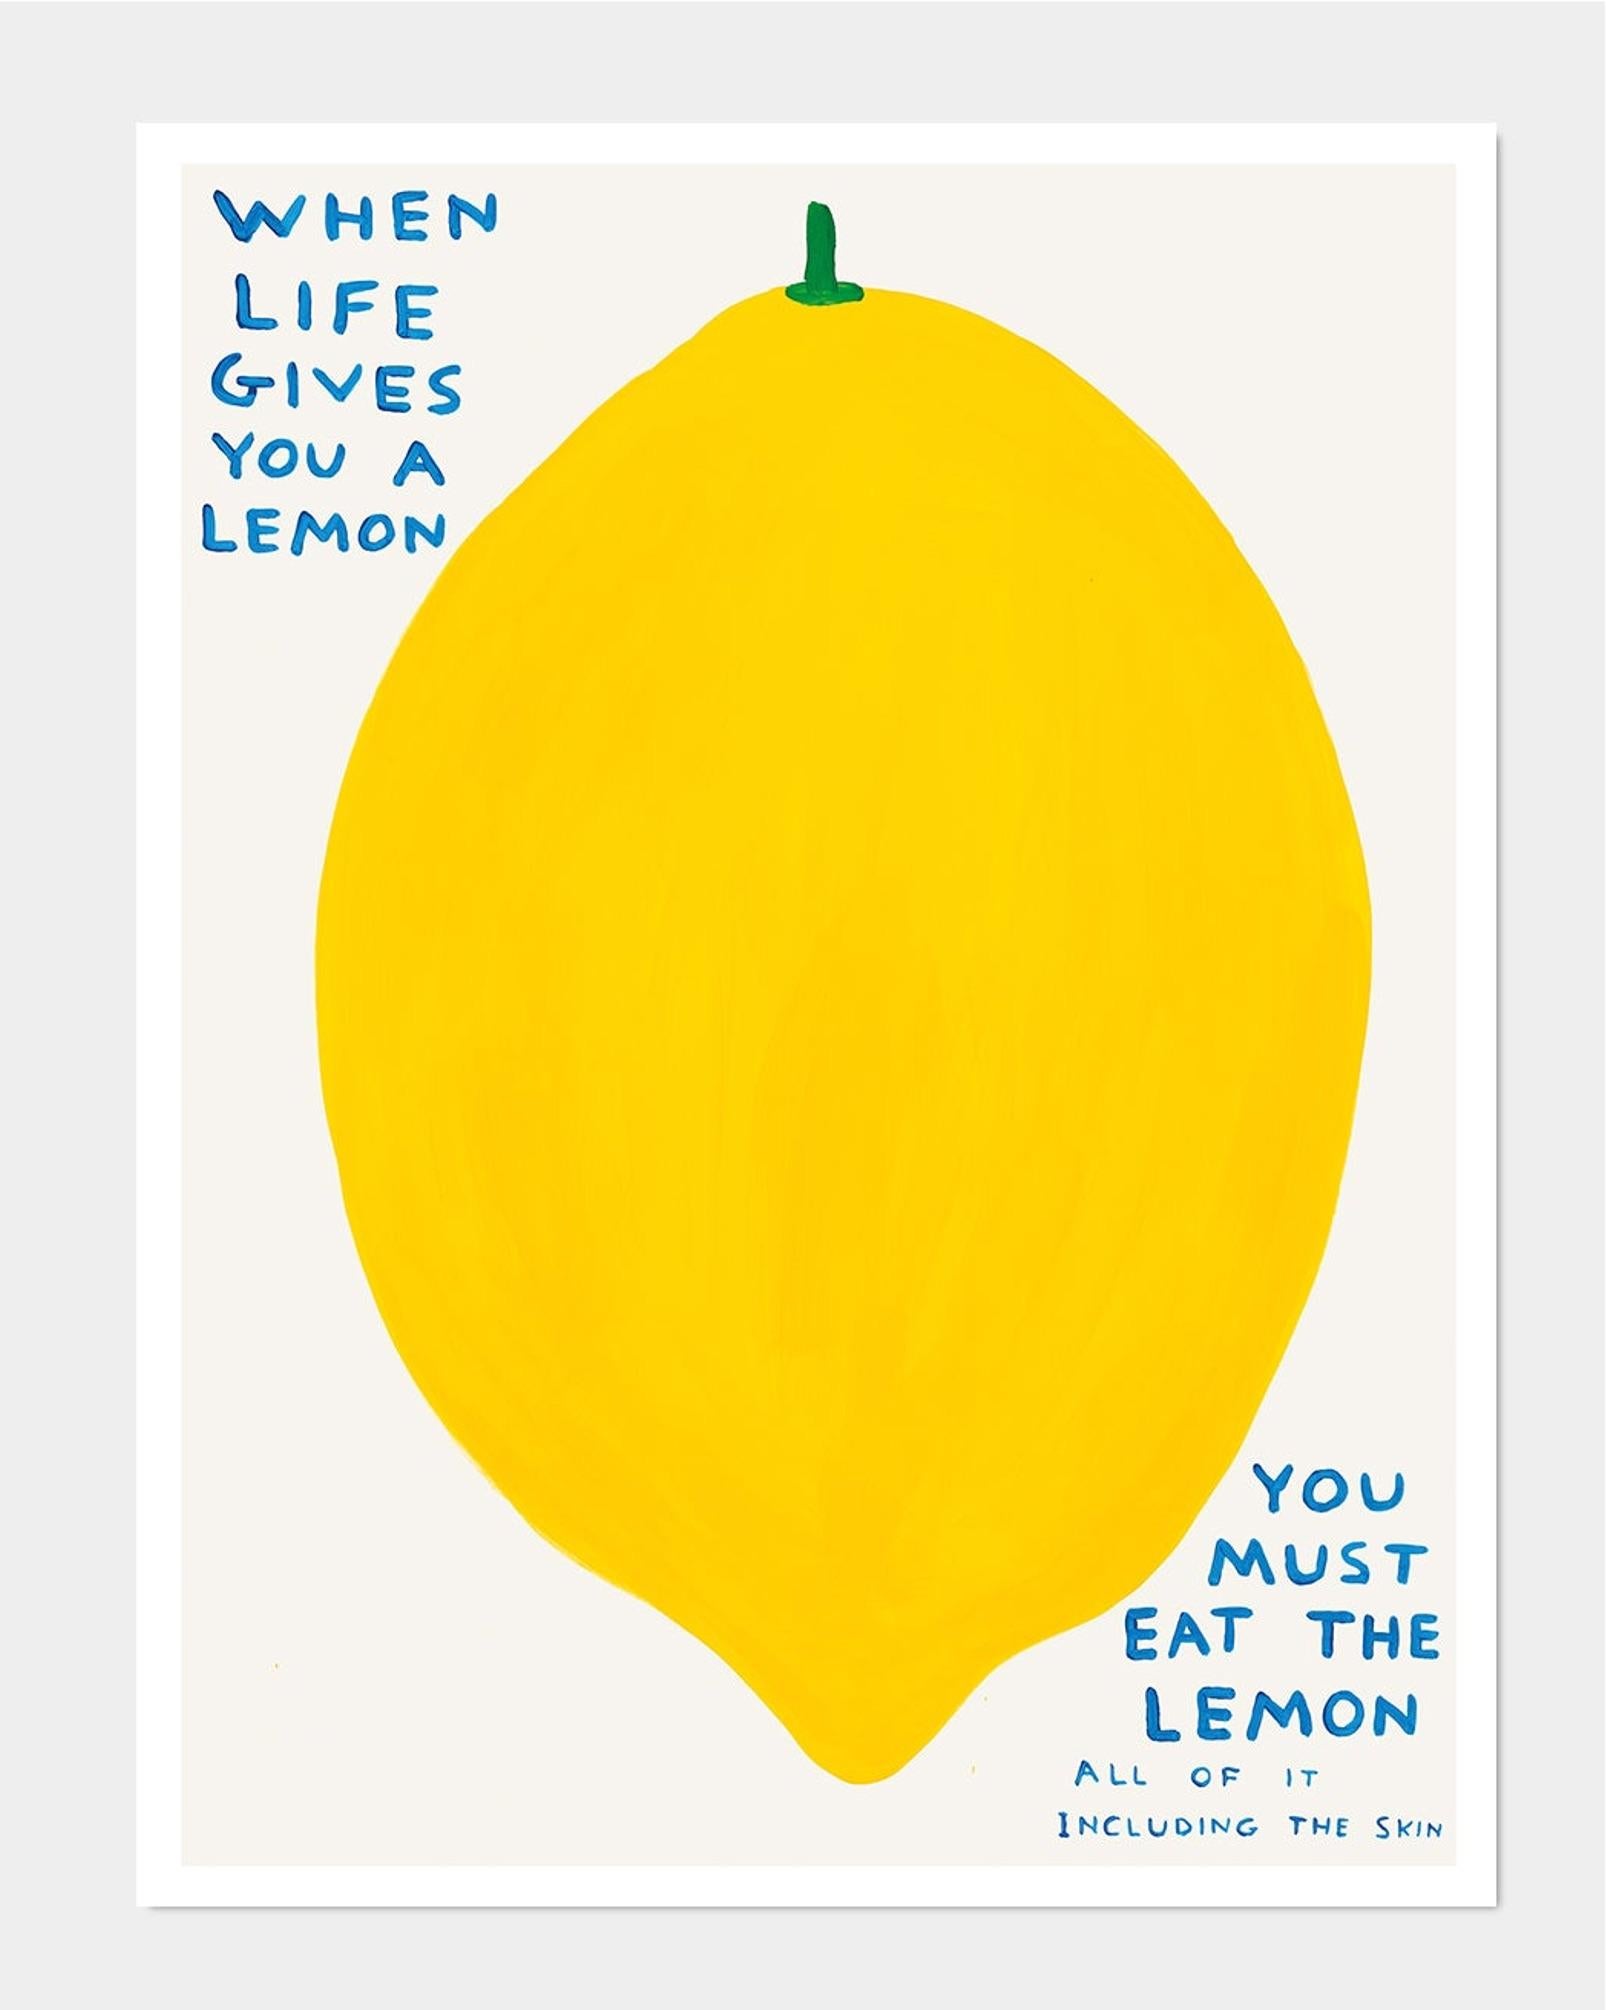 David Shrigley
Wenn das Leben dir eine Zitrone schenkt, 2021
80 x 60 cm
Offset-Lithographie
Gedruckt auf 200g Munken Lynx Papier